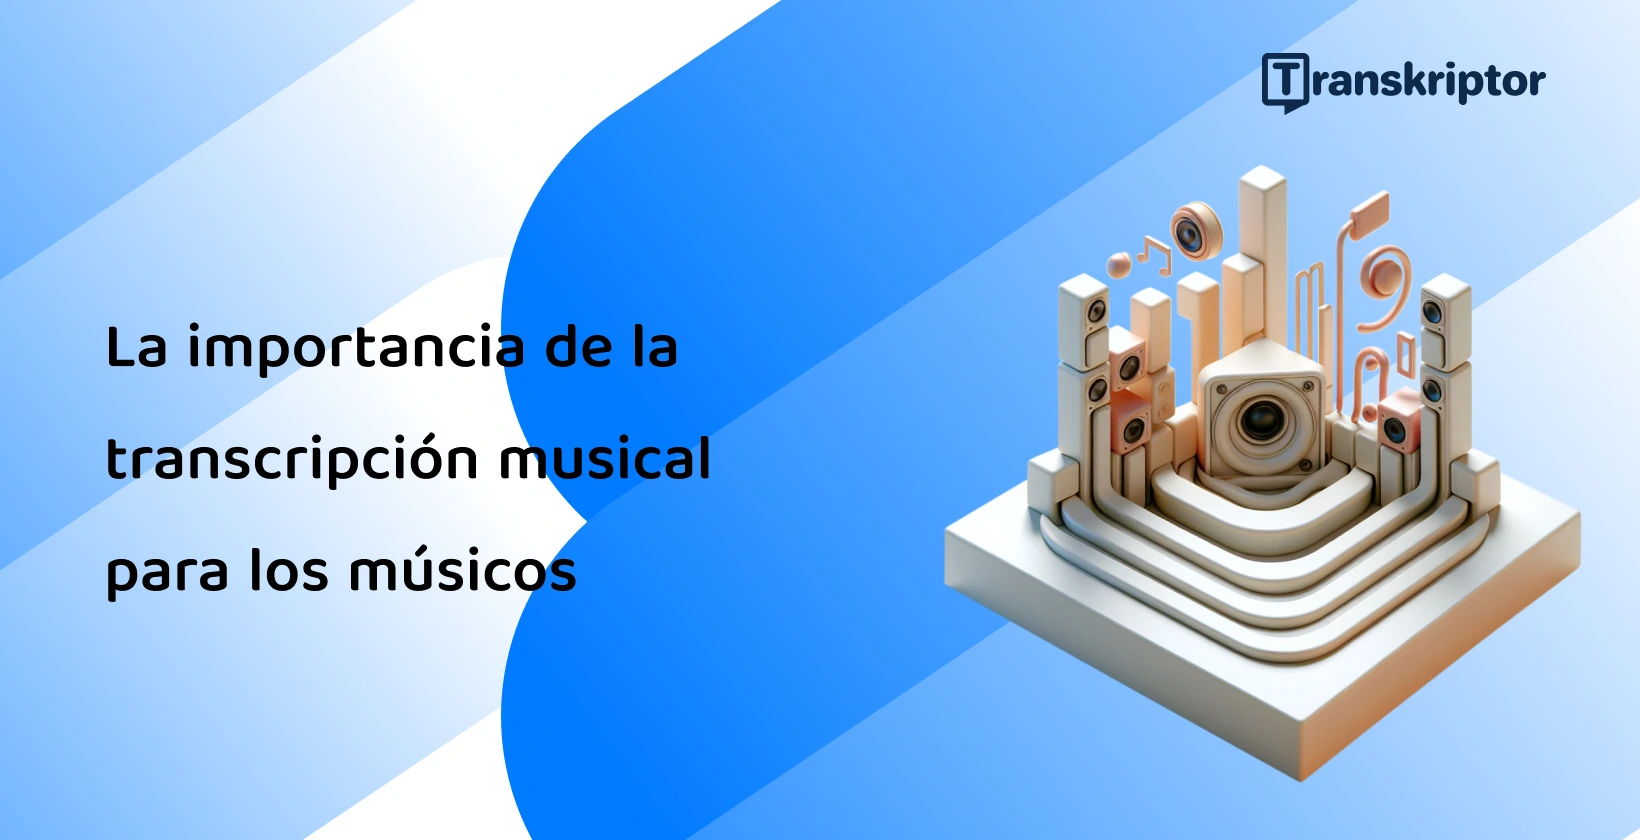 Configuración abstracta con notas musicales y elementos de altavoz que representan el papel crucial de la transcripción musical para los músicos.